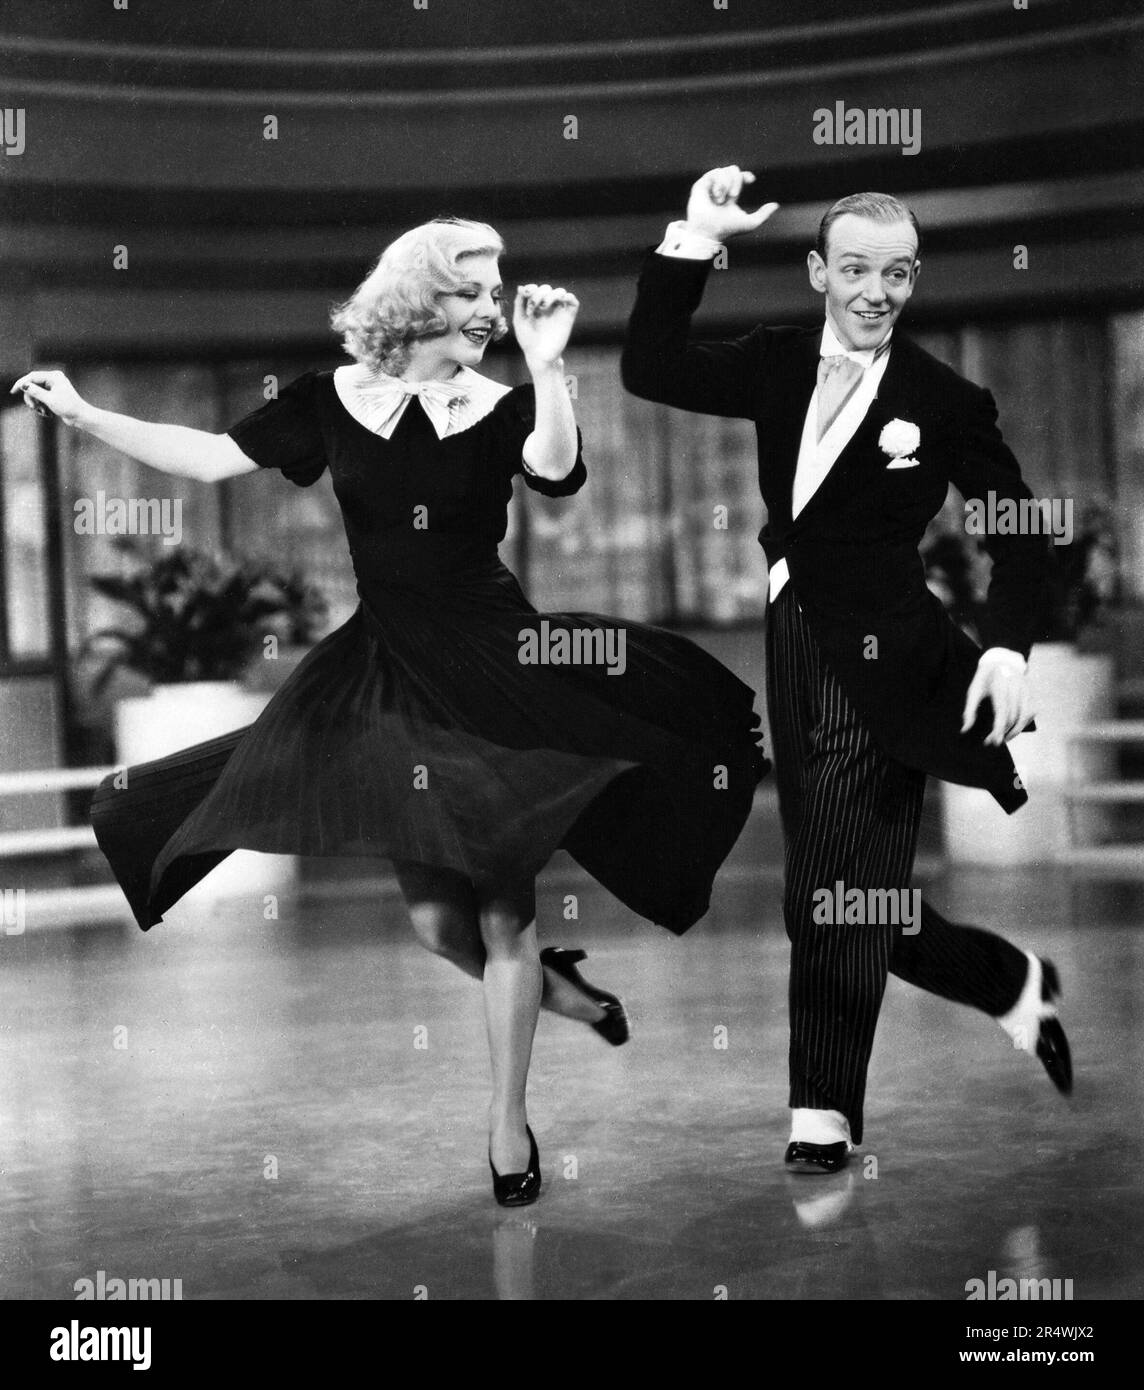 Photo tirée du film 'Swing' une comédie musicale romantique situé dans la ville de New York. Avec Ginger Rogers et Fred Astaire. Datée 1936 Banque D'Images